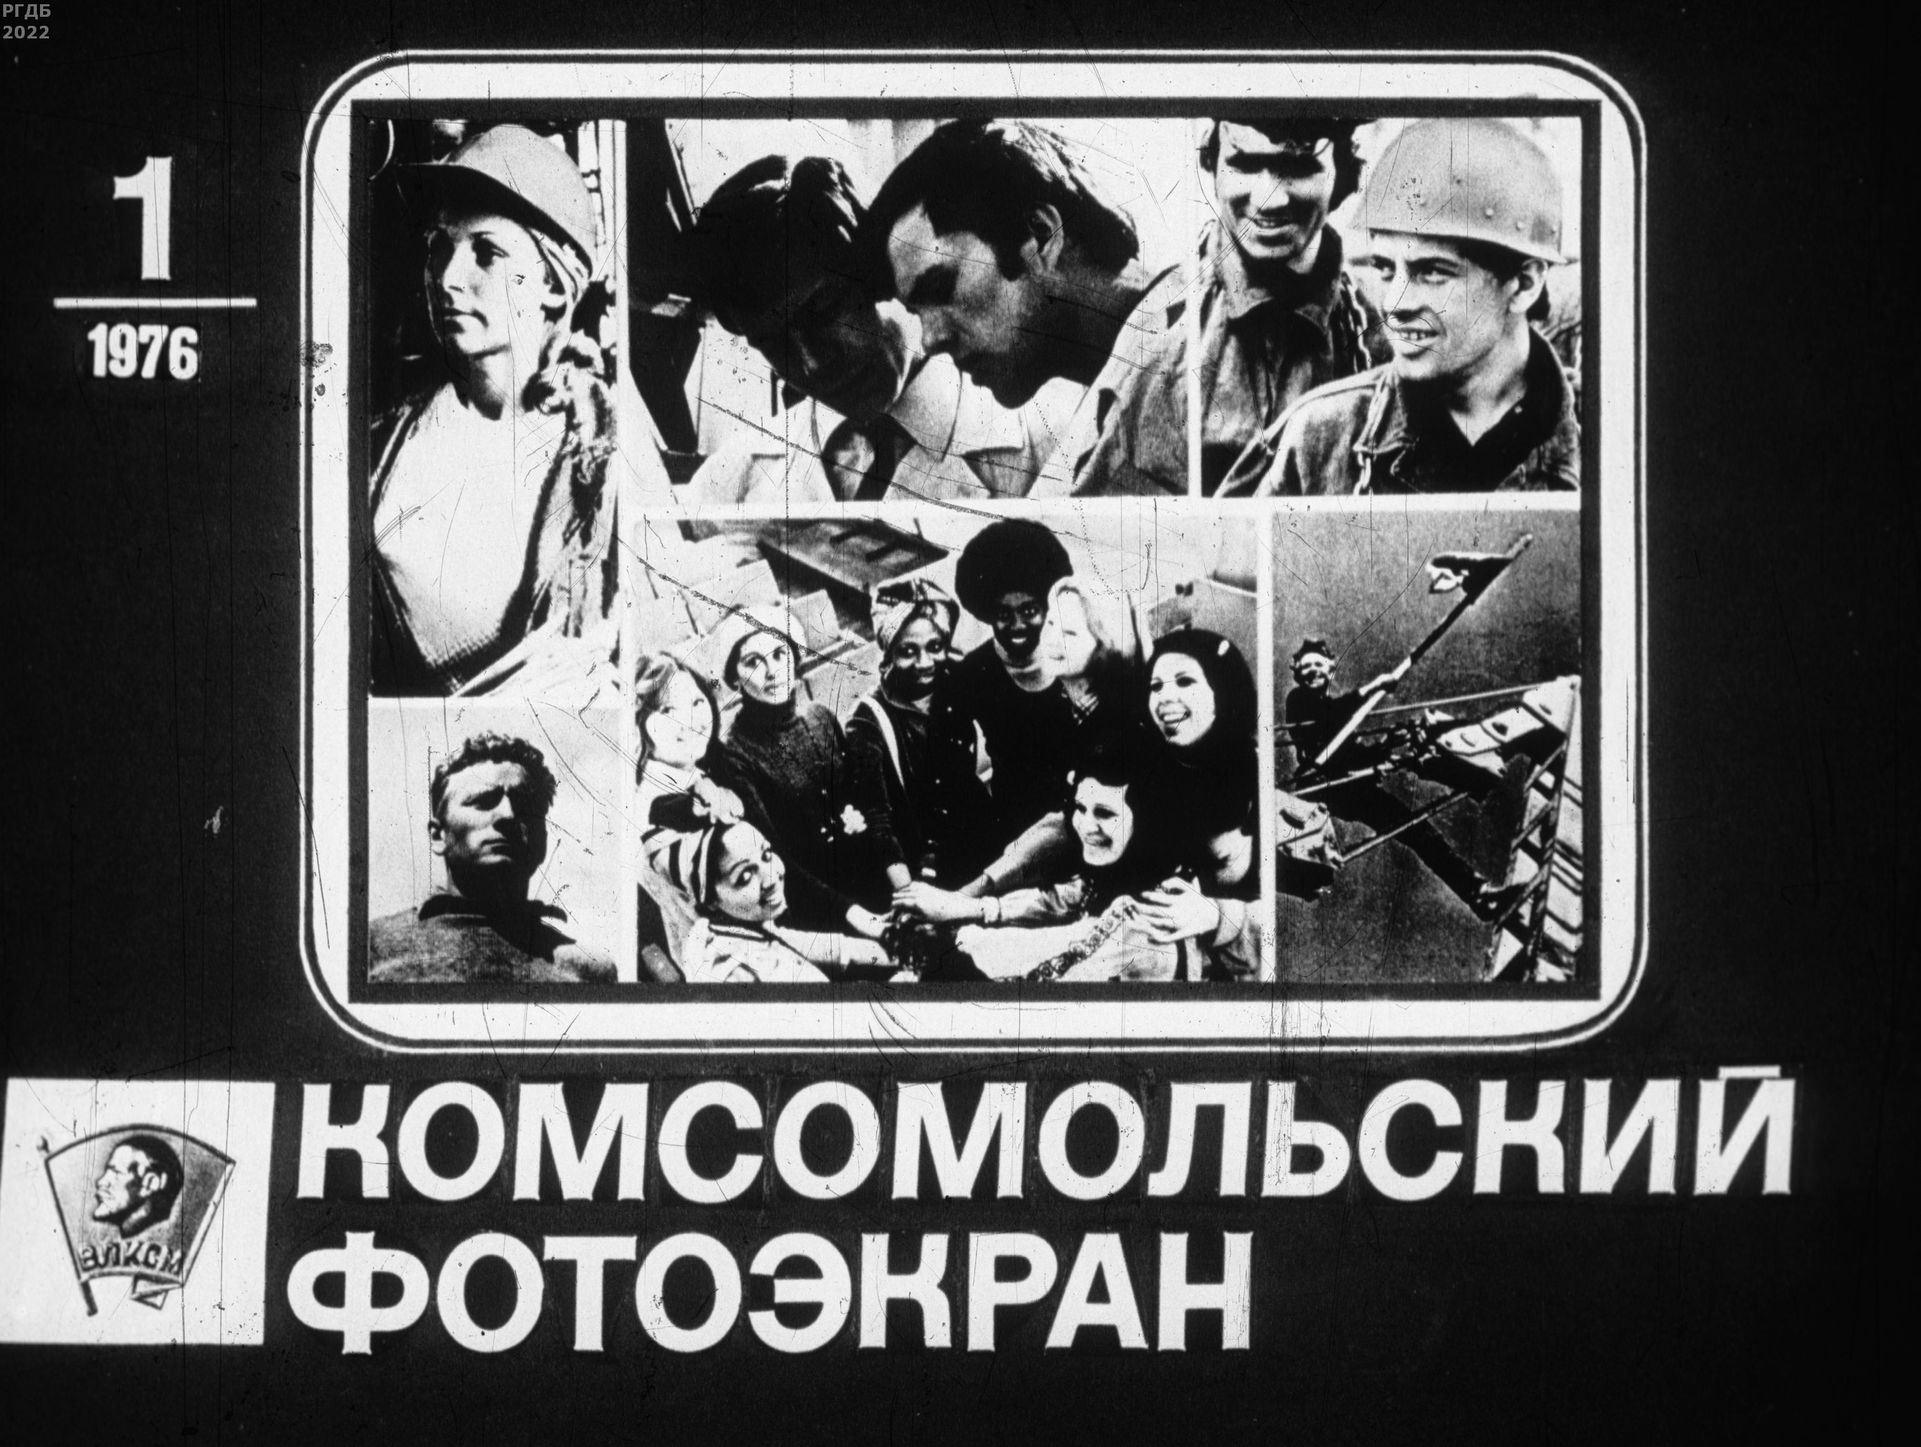 Комсомольский фотоэкран 1976 № 1